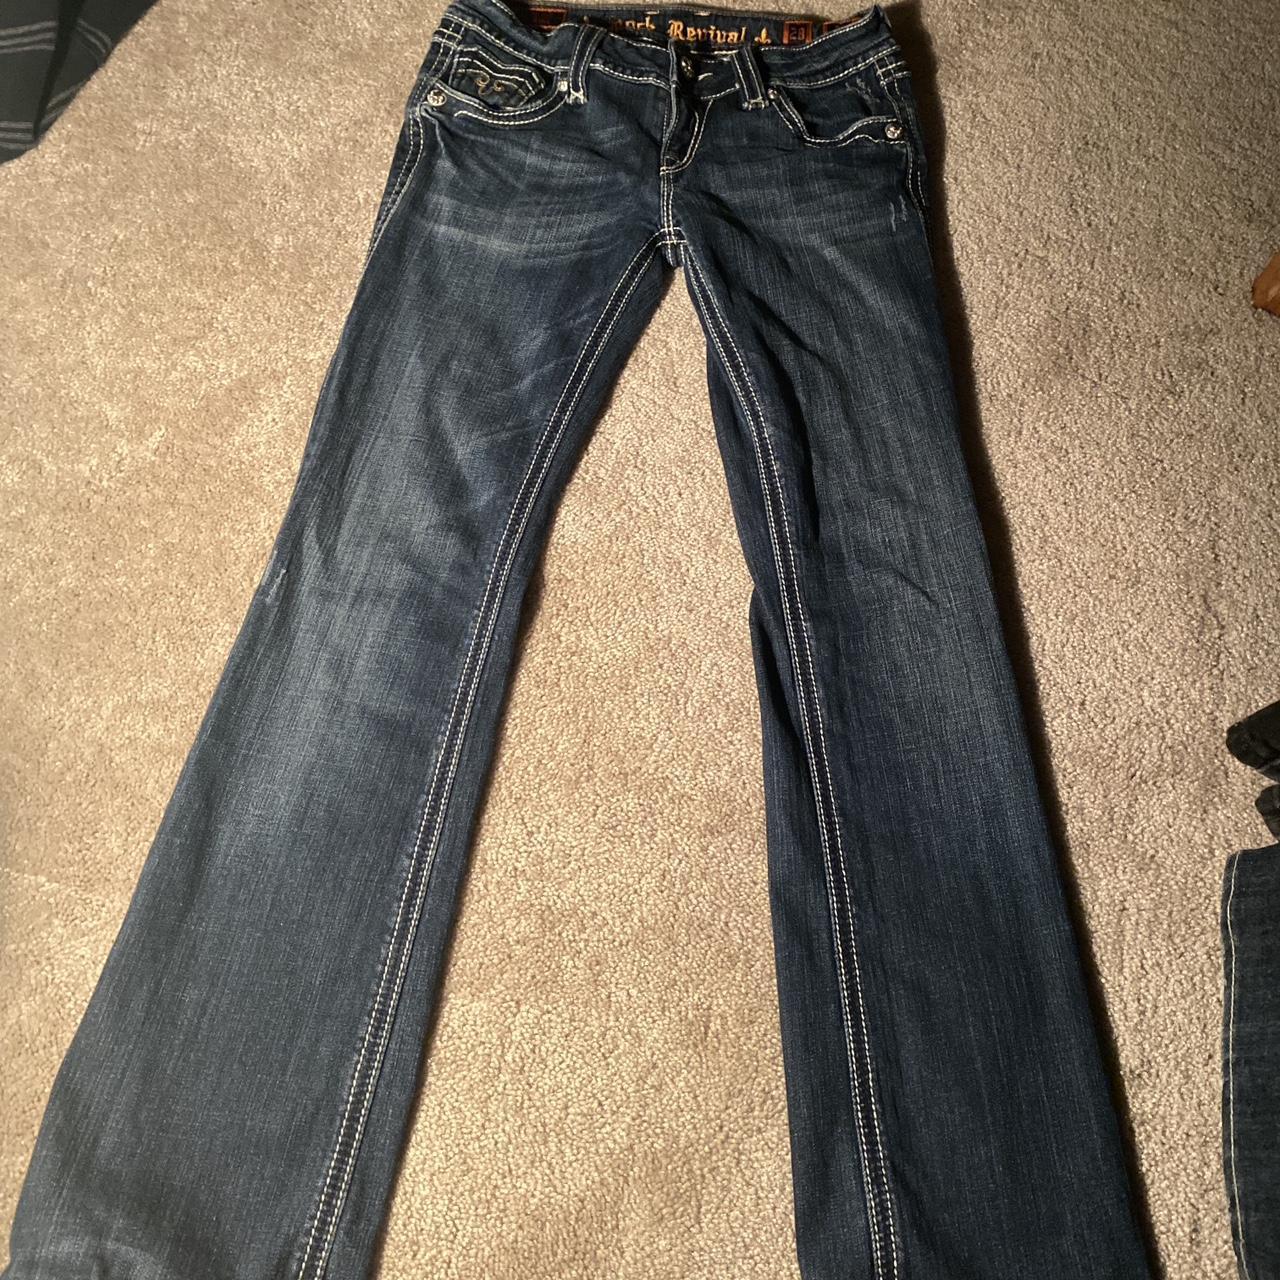 Rock Revival Jeans y2k/trashy y2k/women jeans size... - Depop